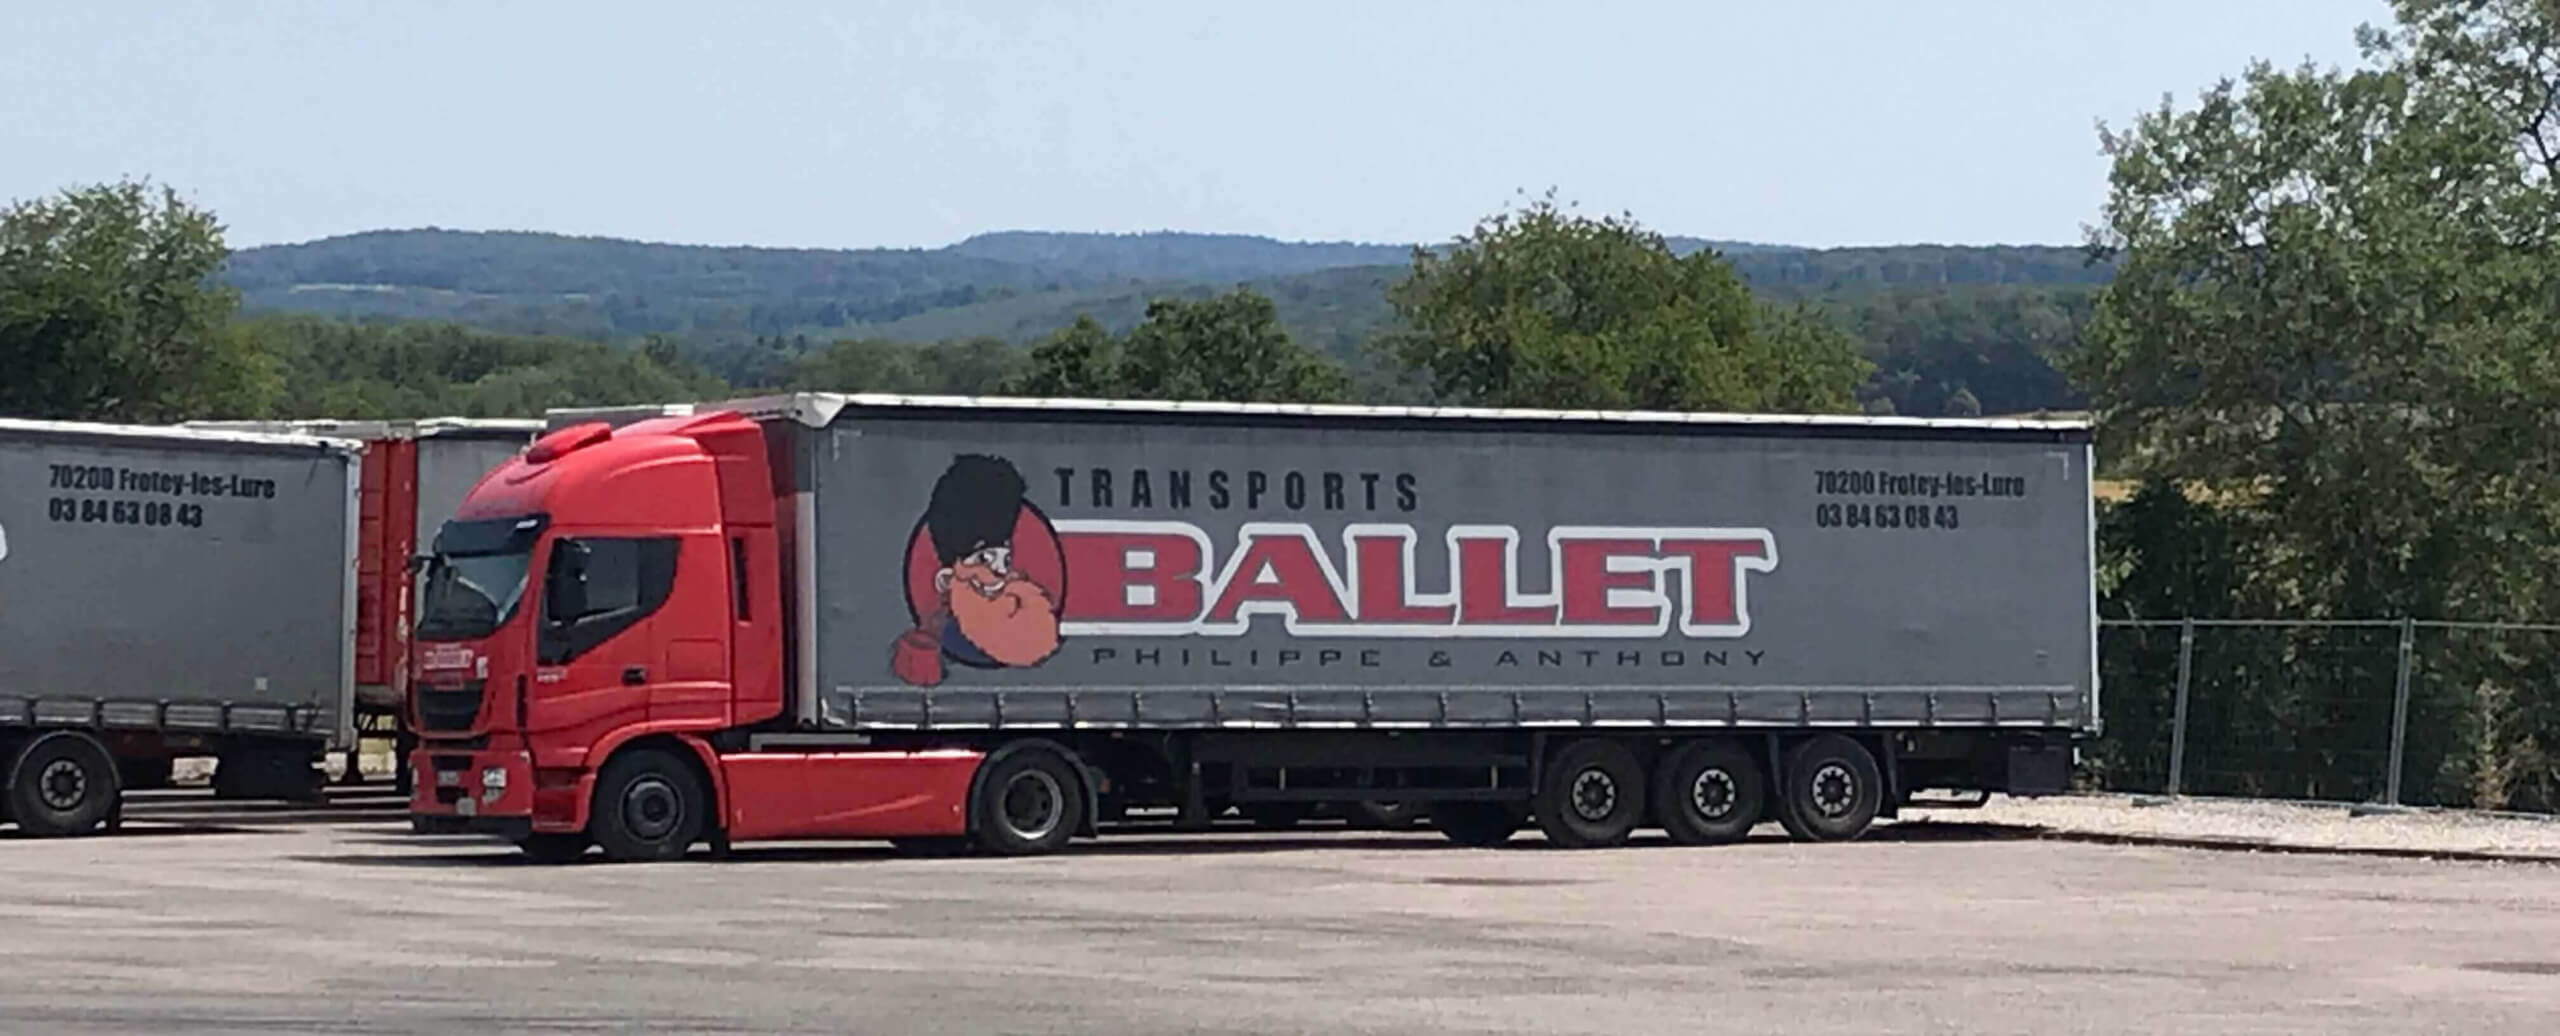 Transports Ballet activité transport régulier nord-est nord-ouest France